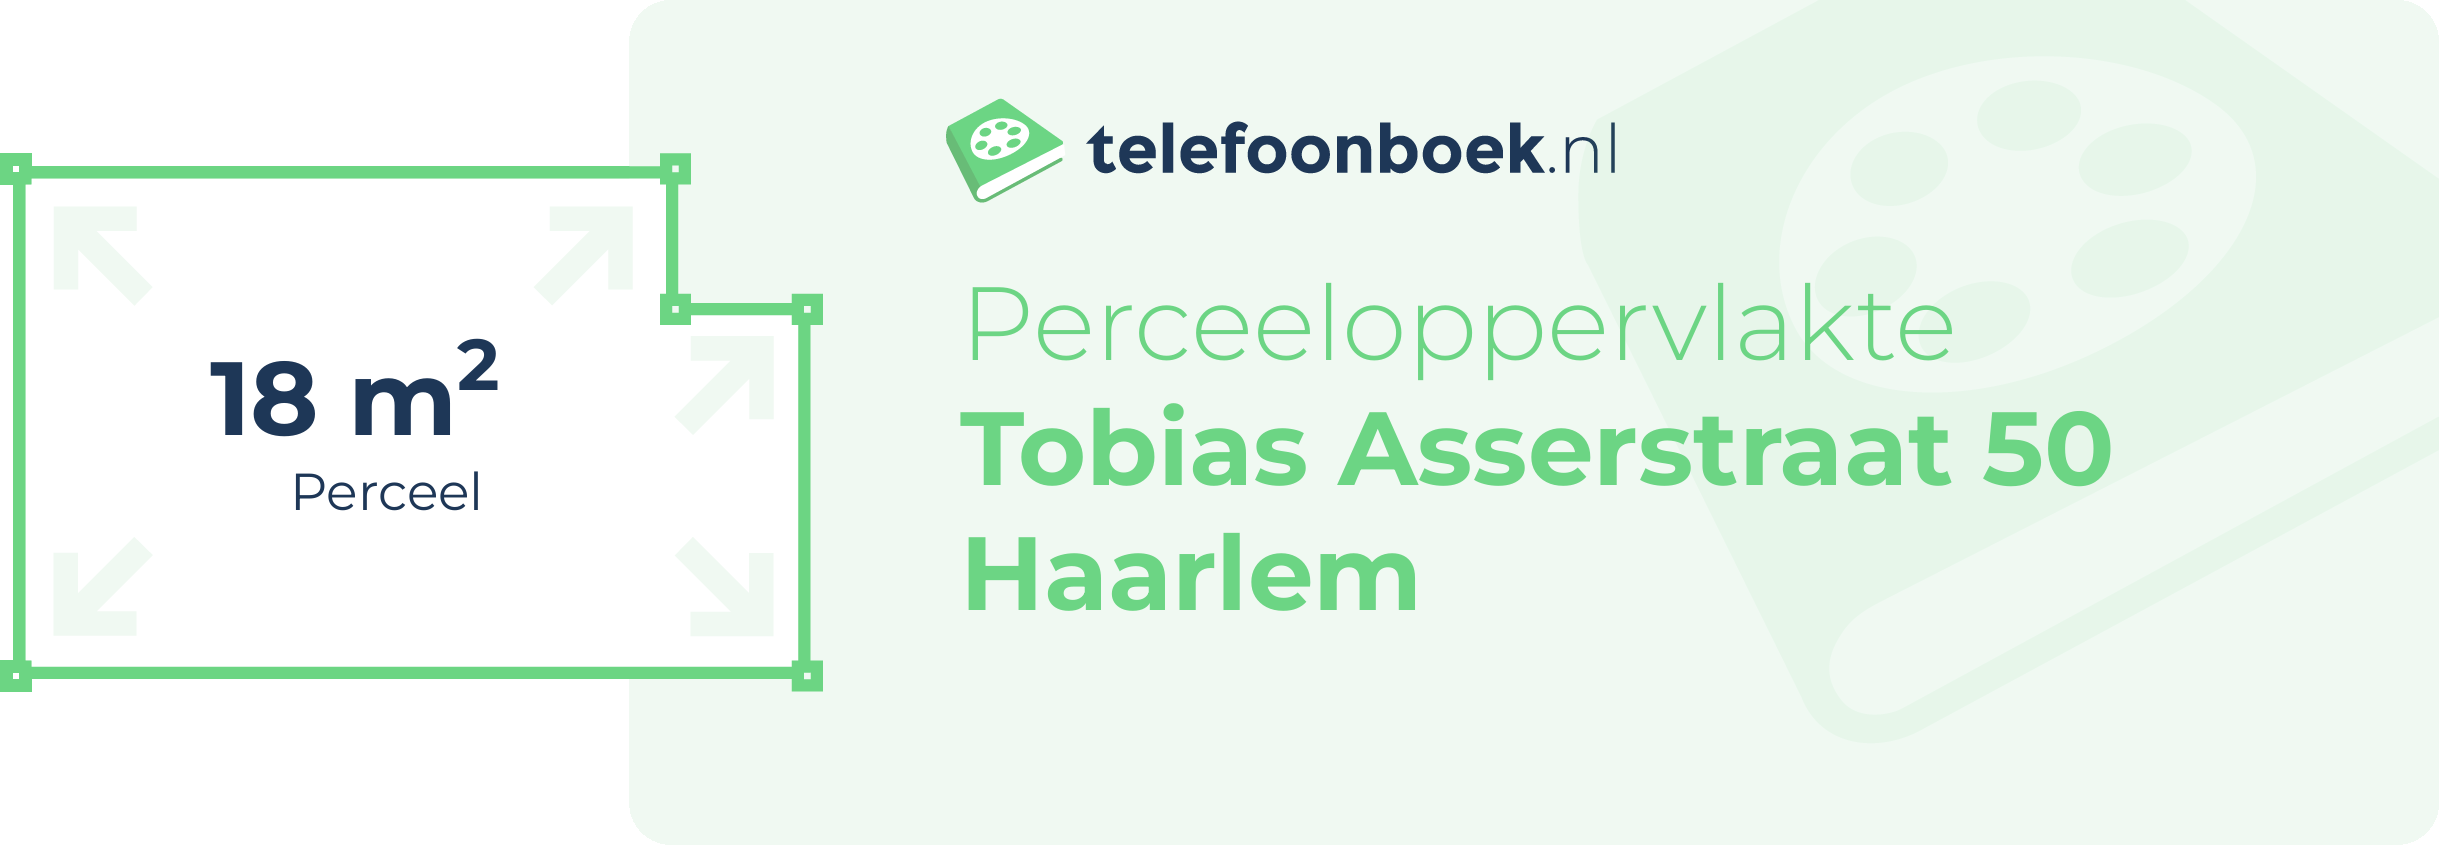 Perceeloppervlakte Tobias Asserstraat 50 Haarlem